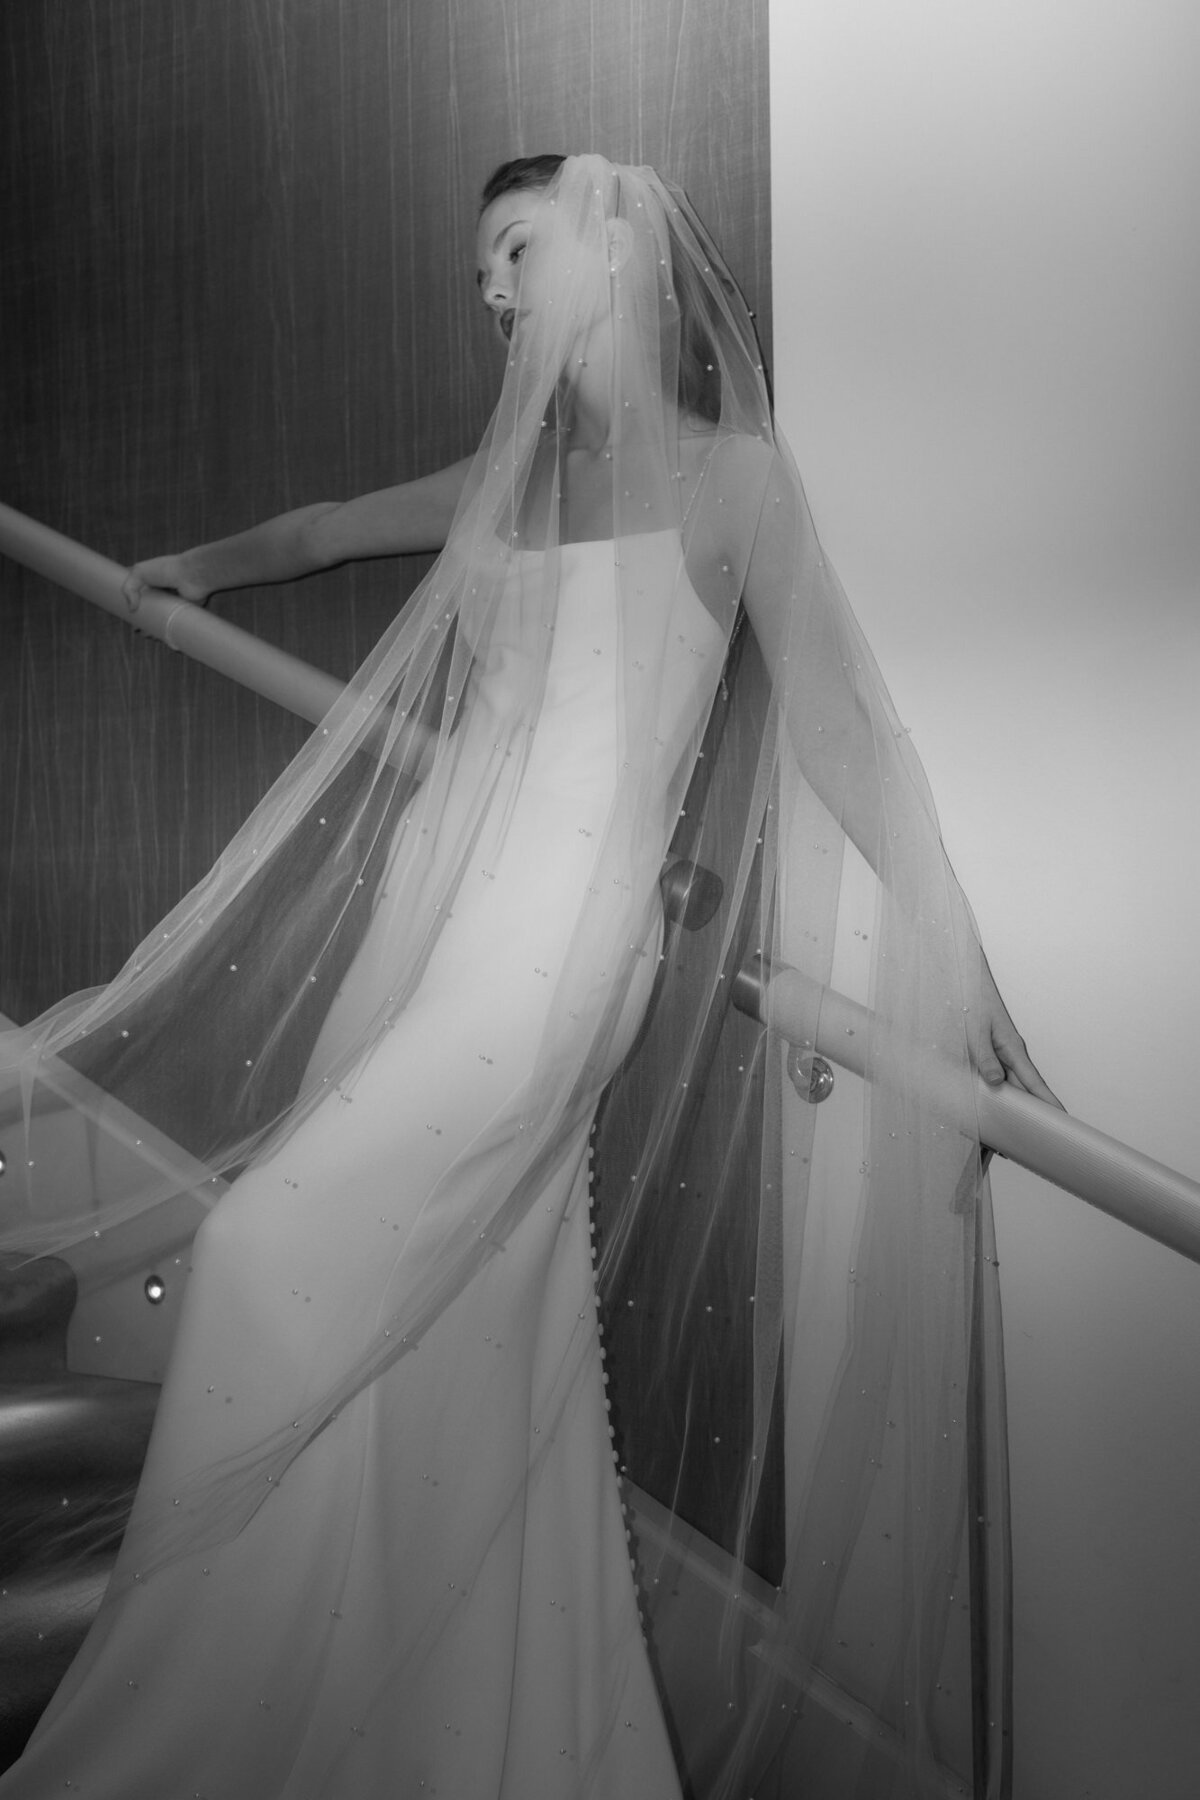 Den langen Schleier mit den kleinen Perlen präsentierend lehnt das Brautmodel an einem Treppengeländer.